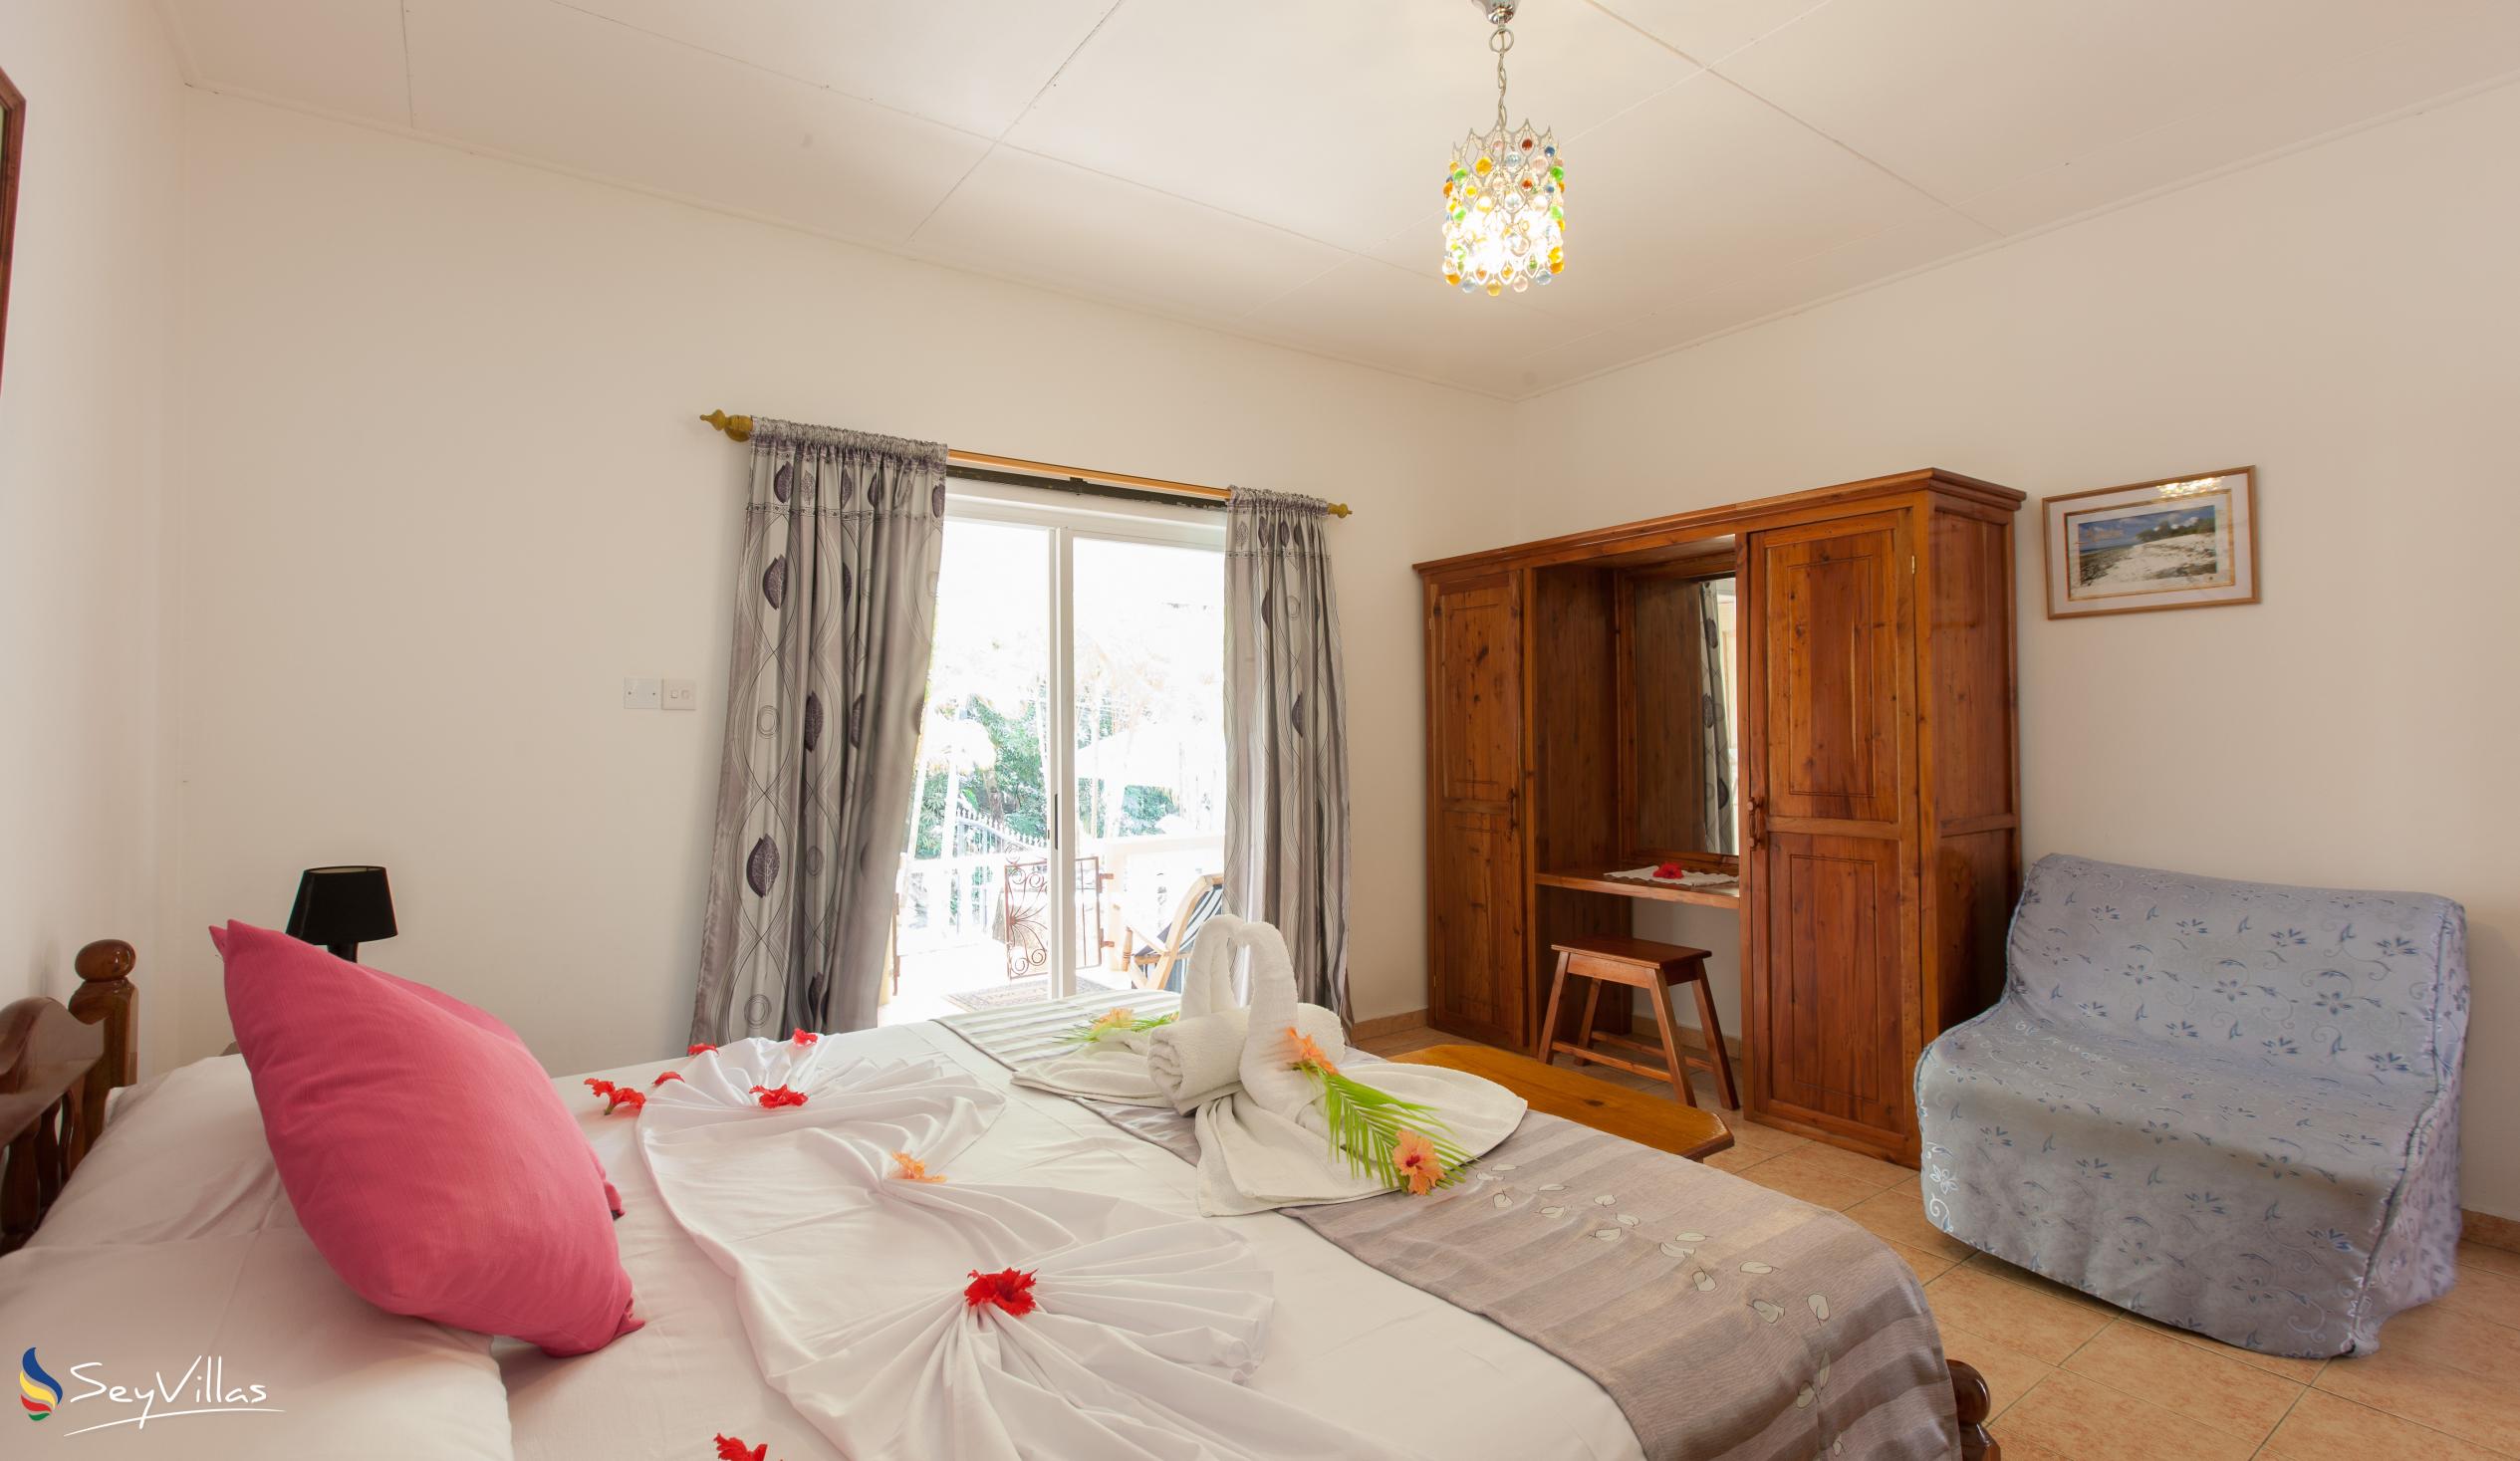 Foto 61: Acquario Villa - Appartement avec 1 chambre - Praslin (Seychelles)